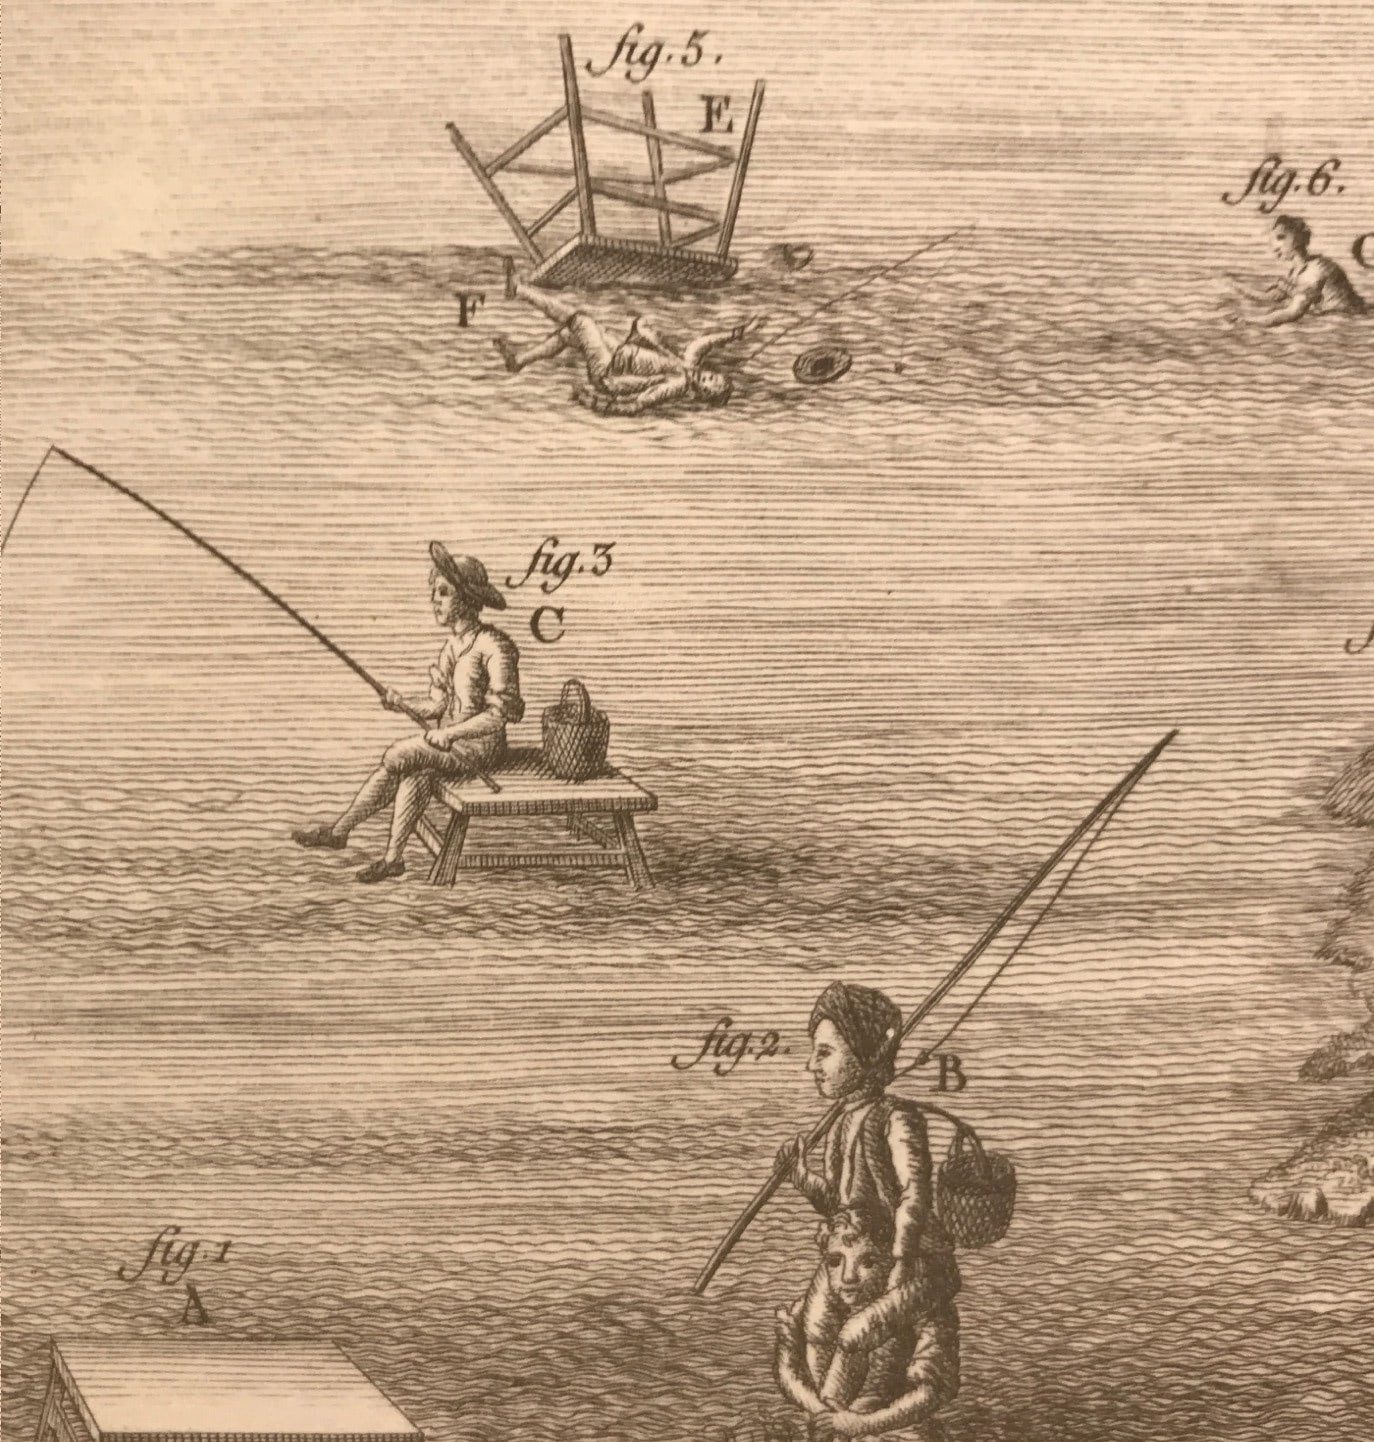 Ilustración antigua que muestra técnicas de pesca tradicionales.